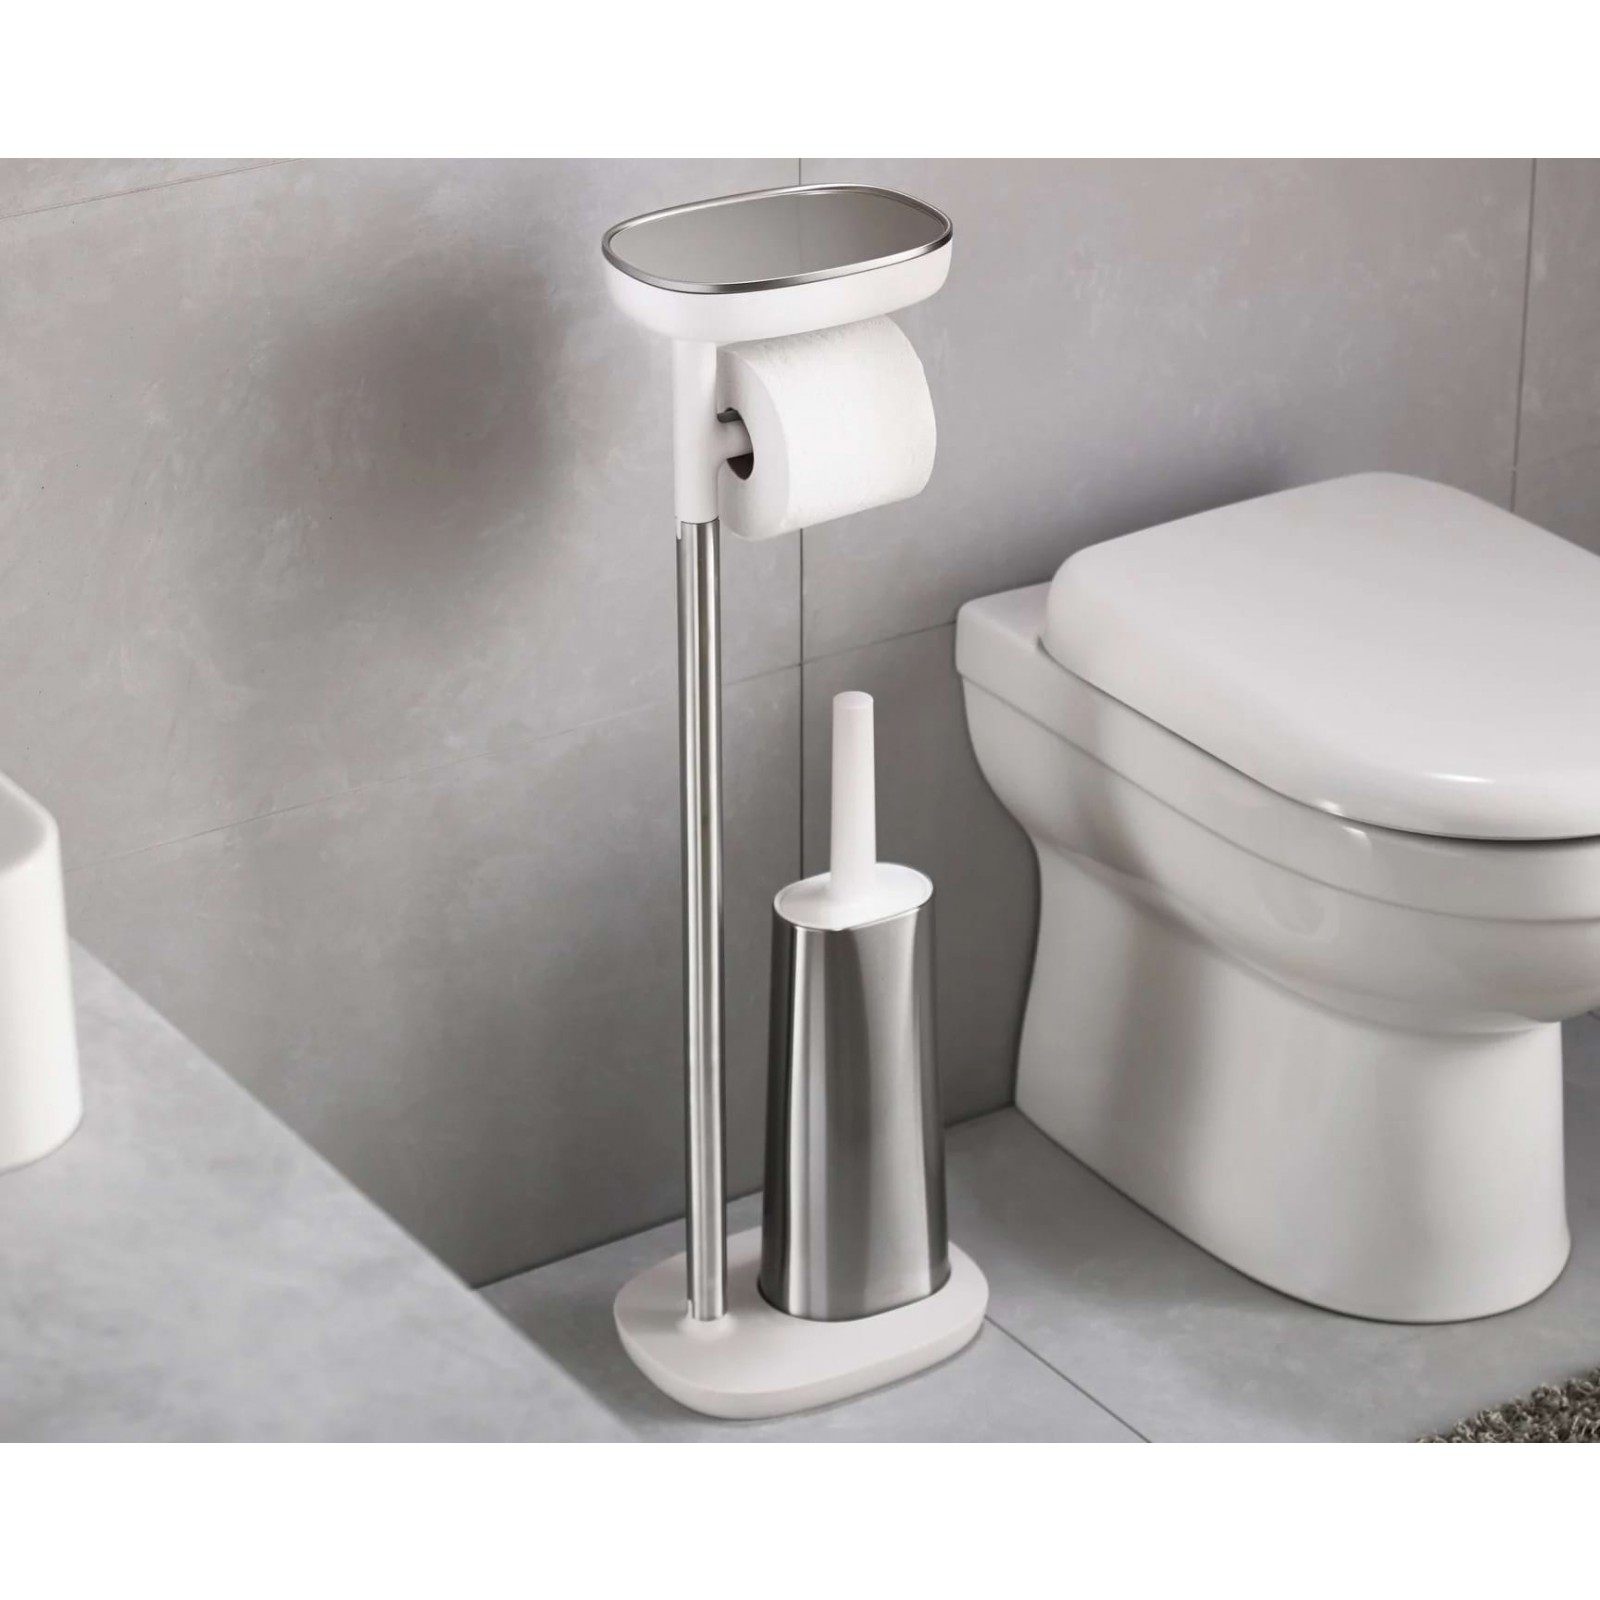 EasyStore Plus Toilet Paper Holder & Flex Toilet Brush